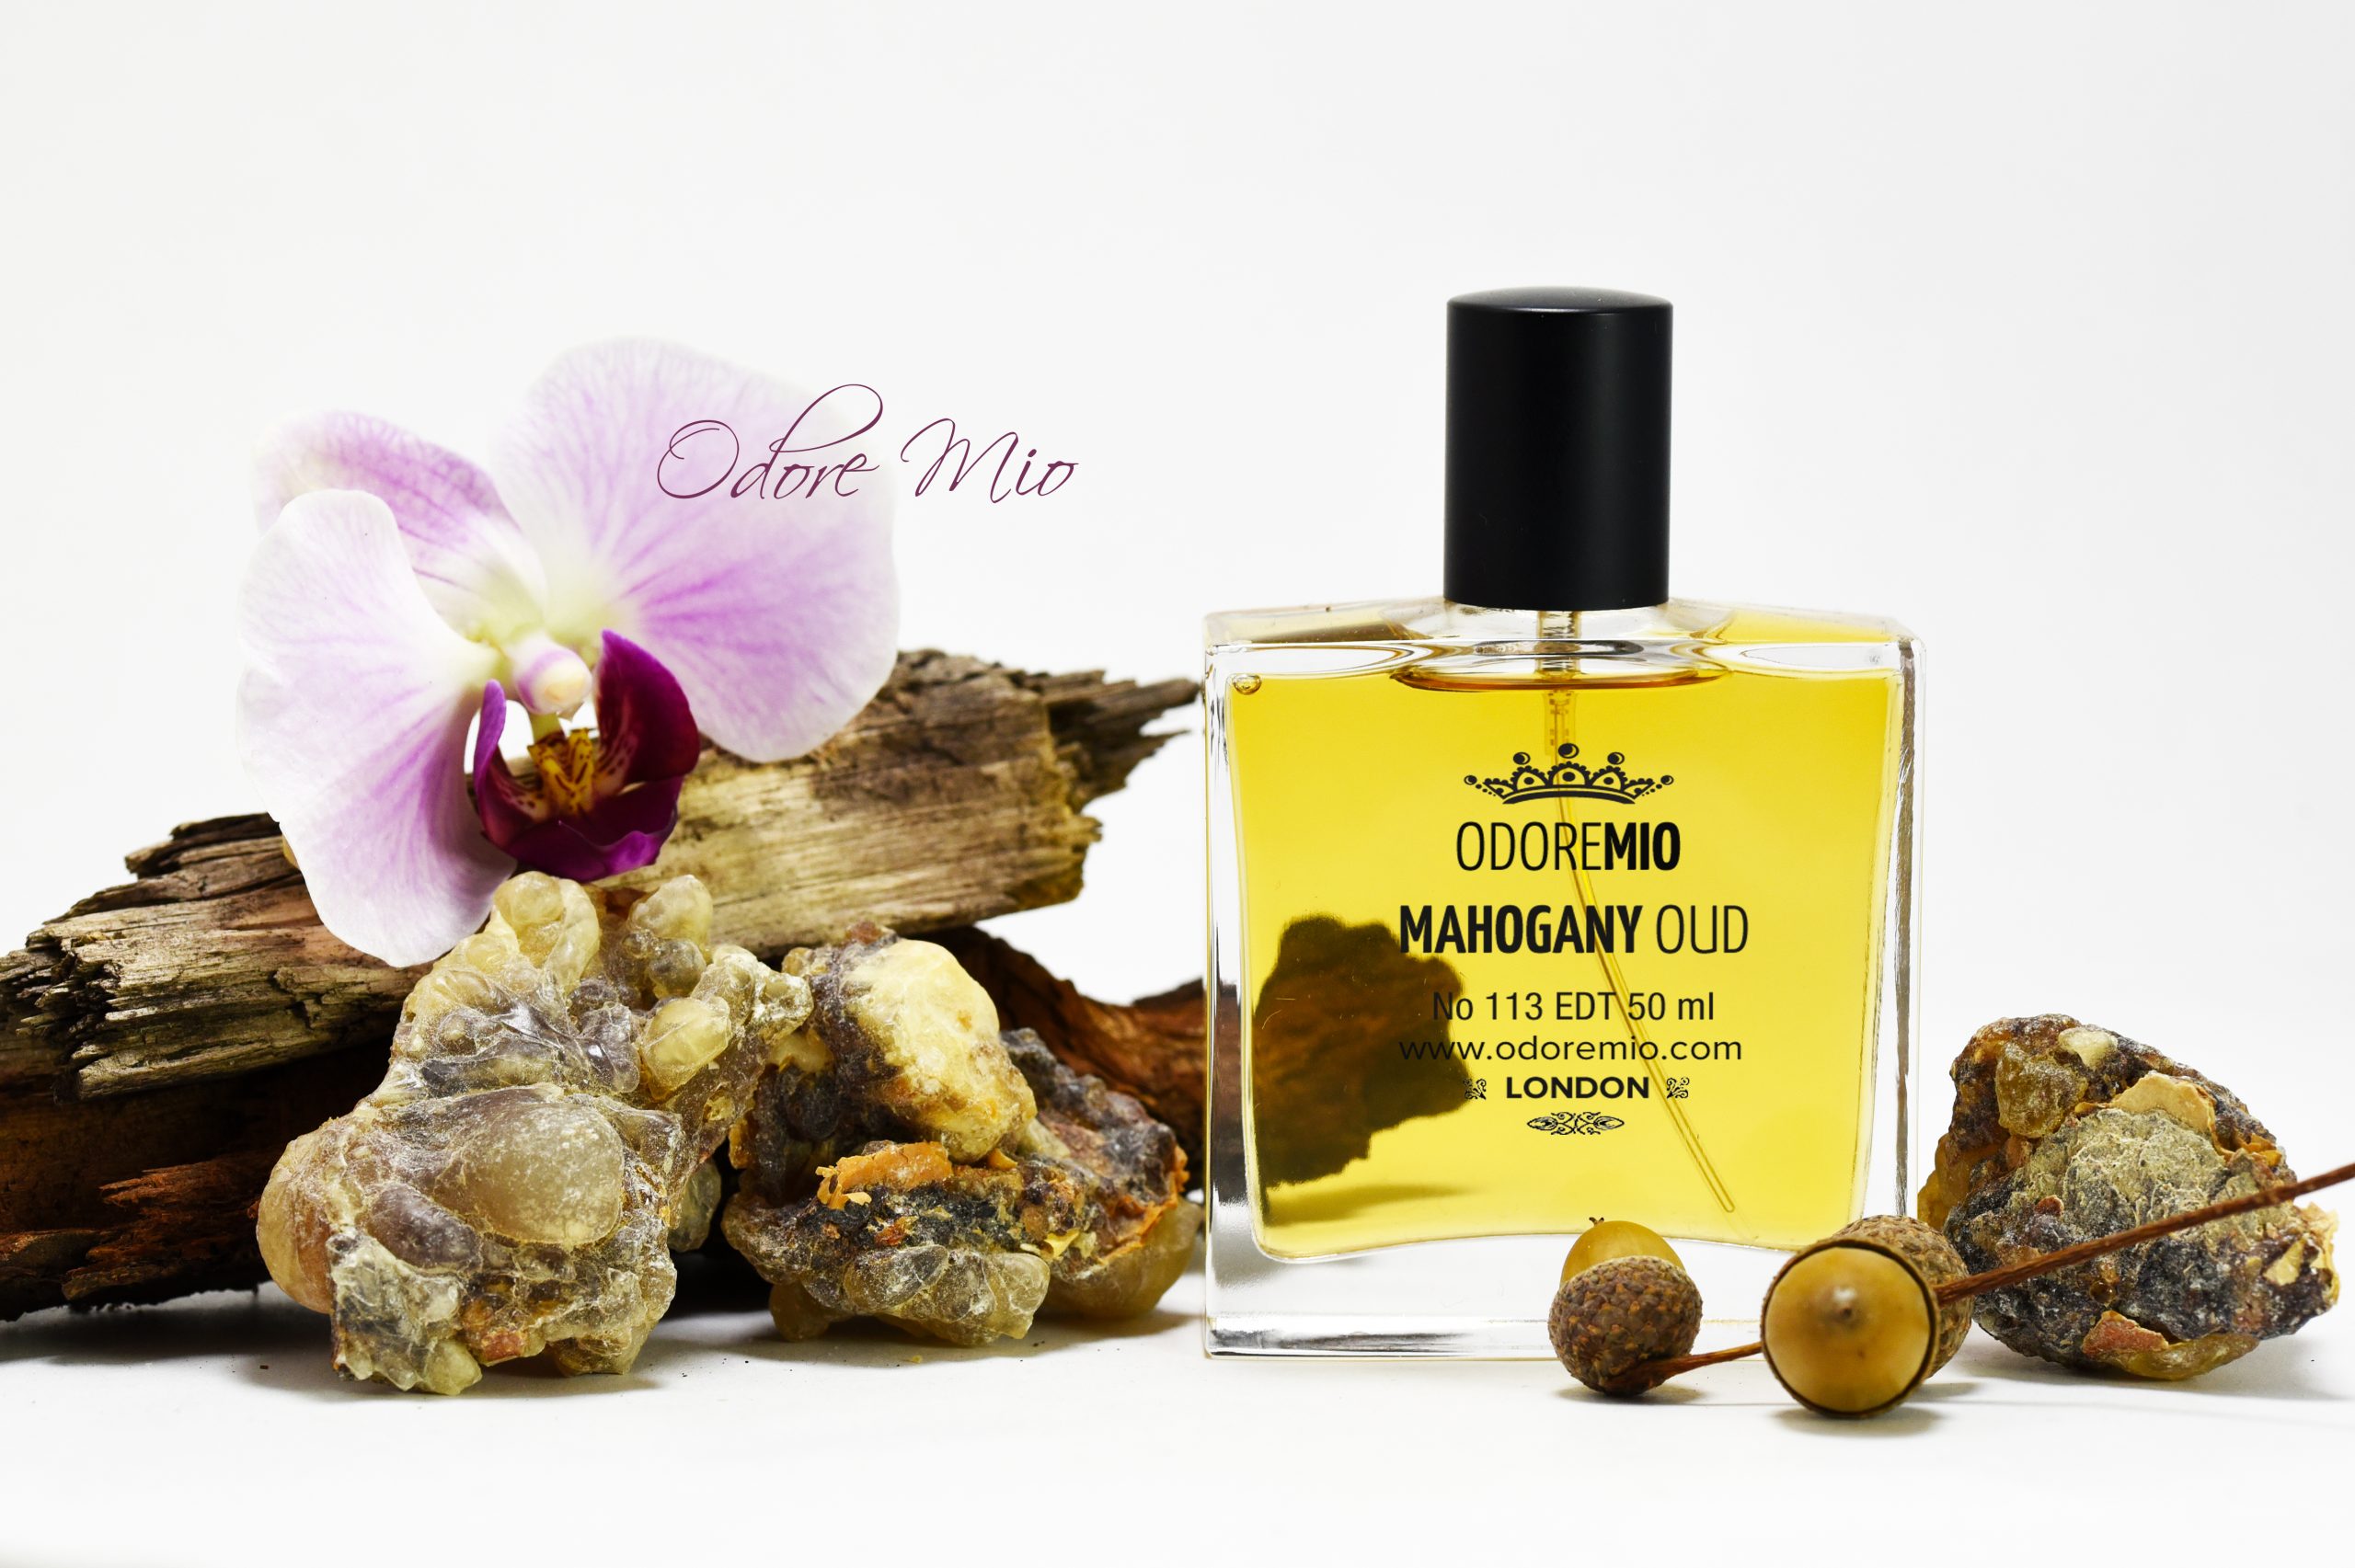 Odore Mio Mahogany Oud Perfume